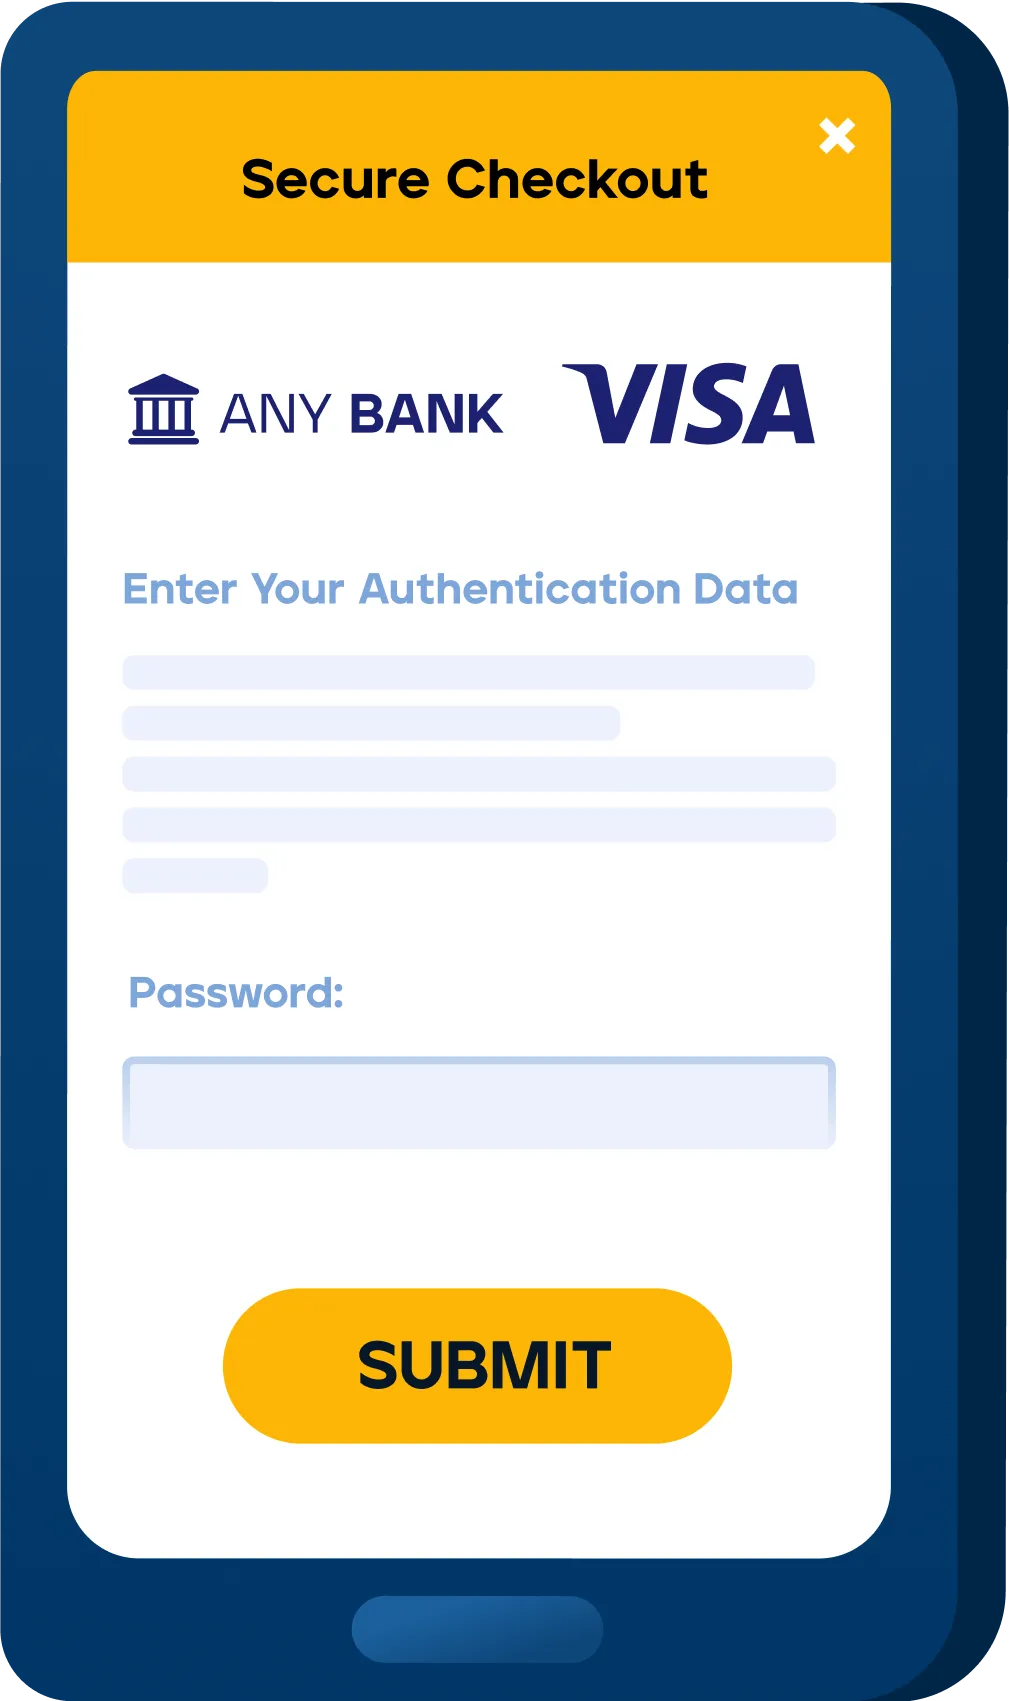 Visa Secure Checkout Dashboard UI illustration